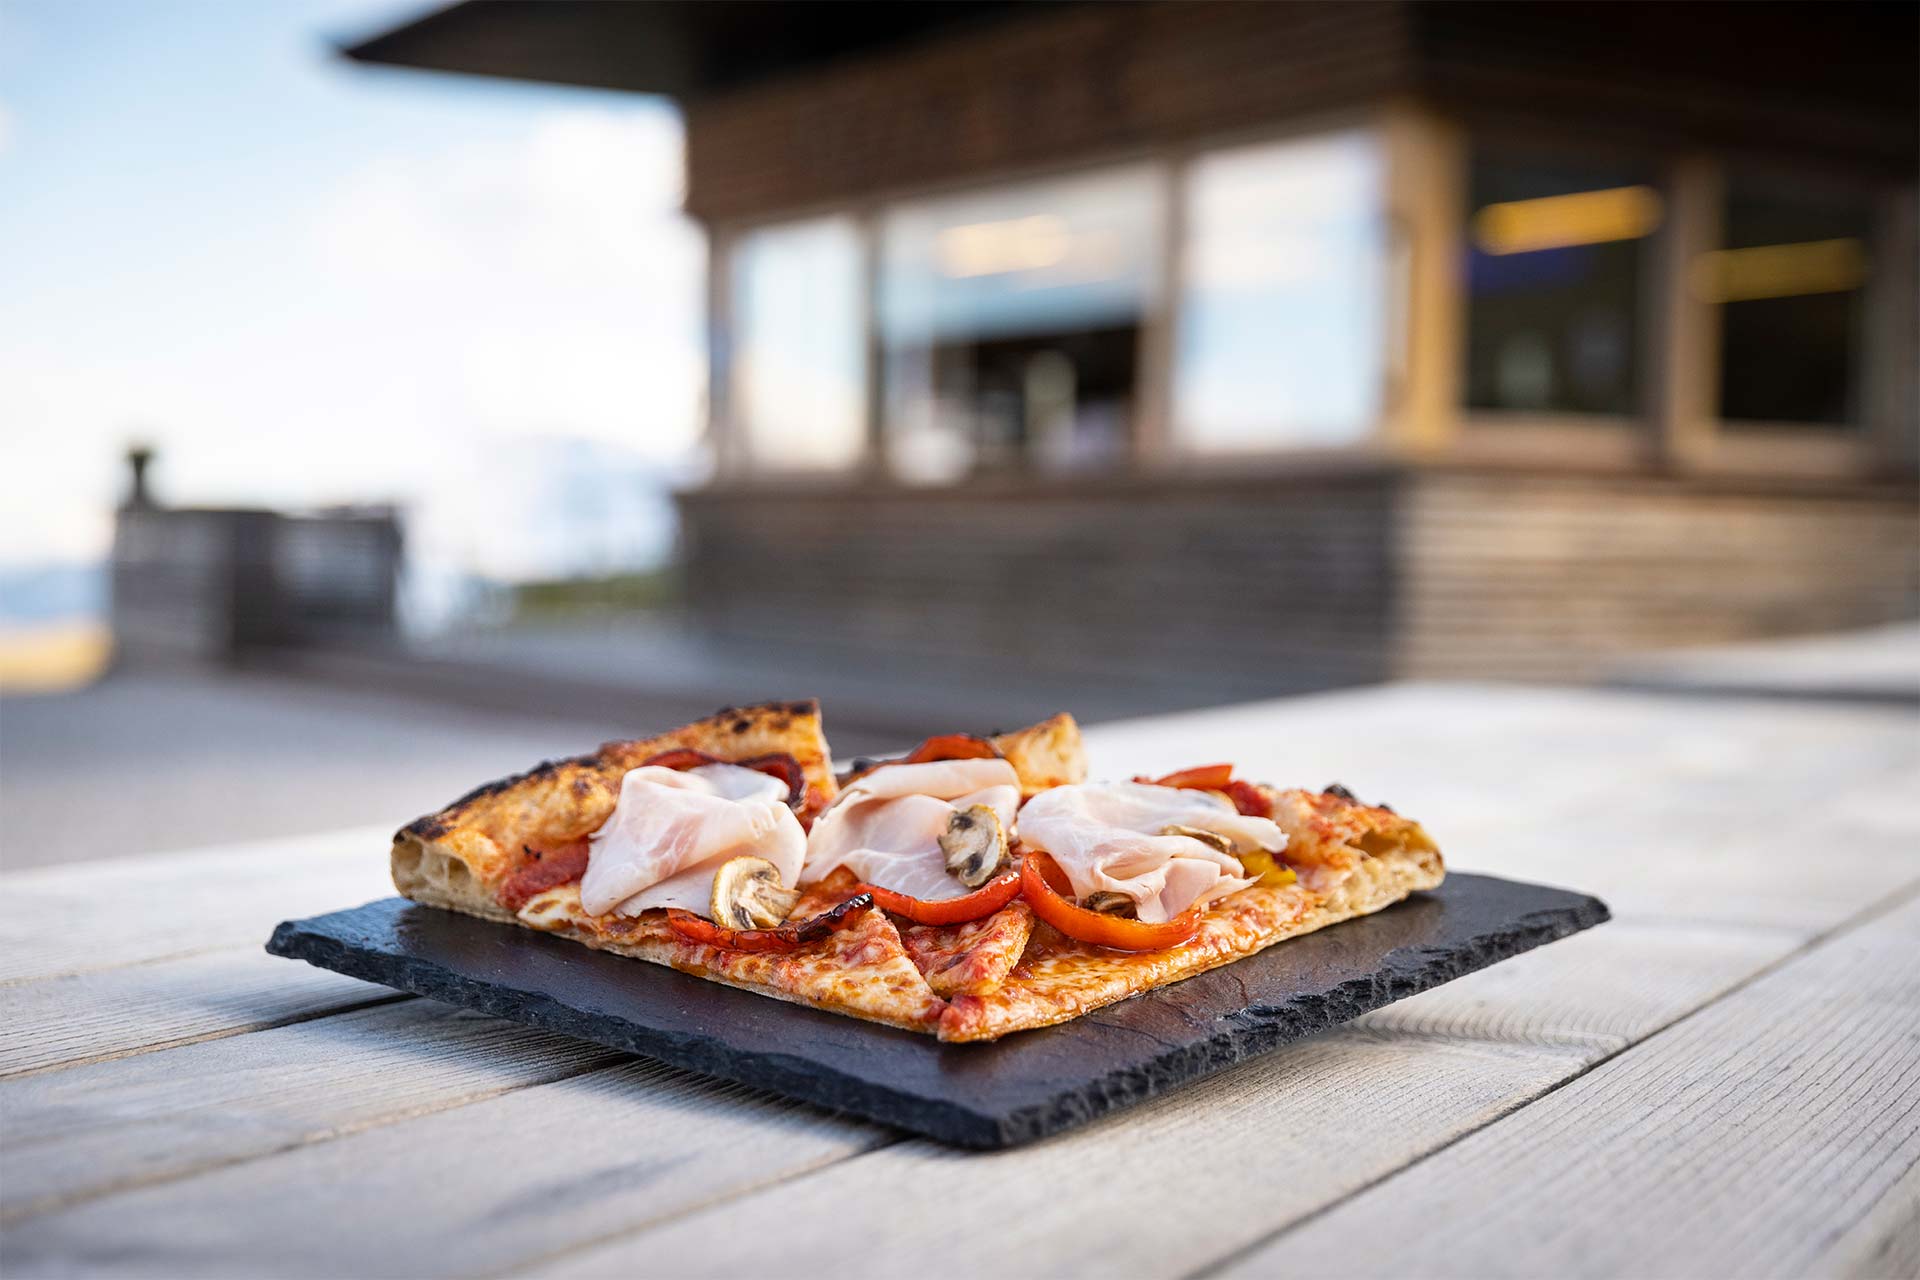 Drei leckere Pizzastücke, die im Selbstbedienungsbereich serviert werden können.